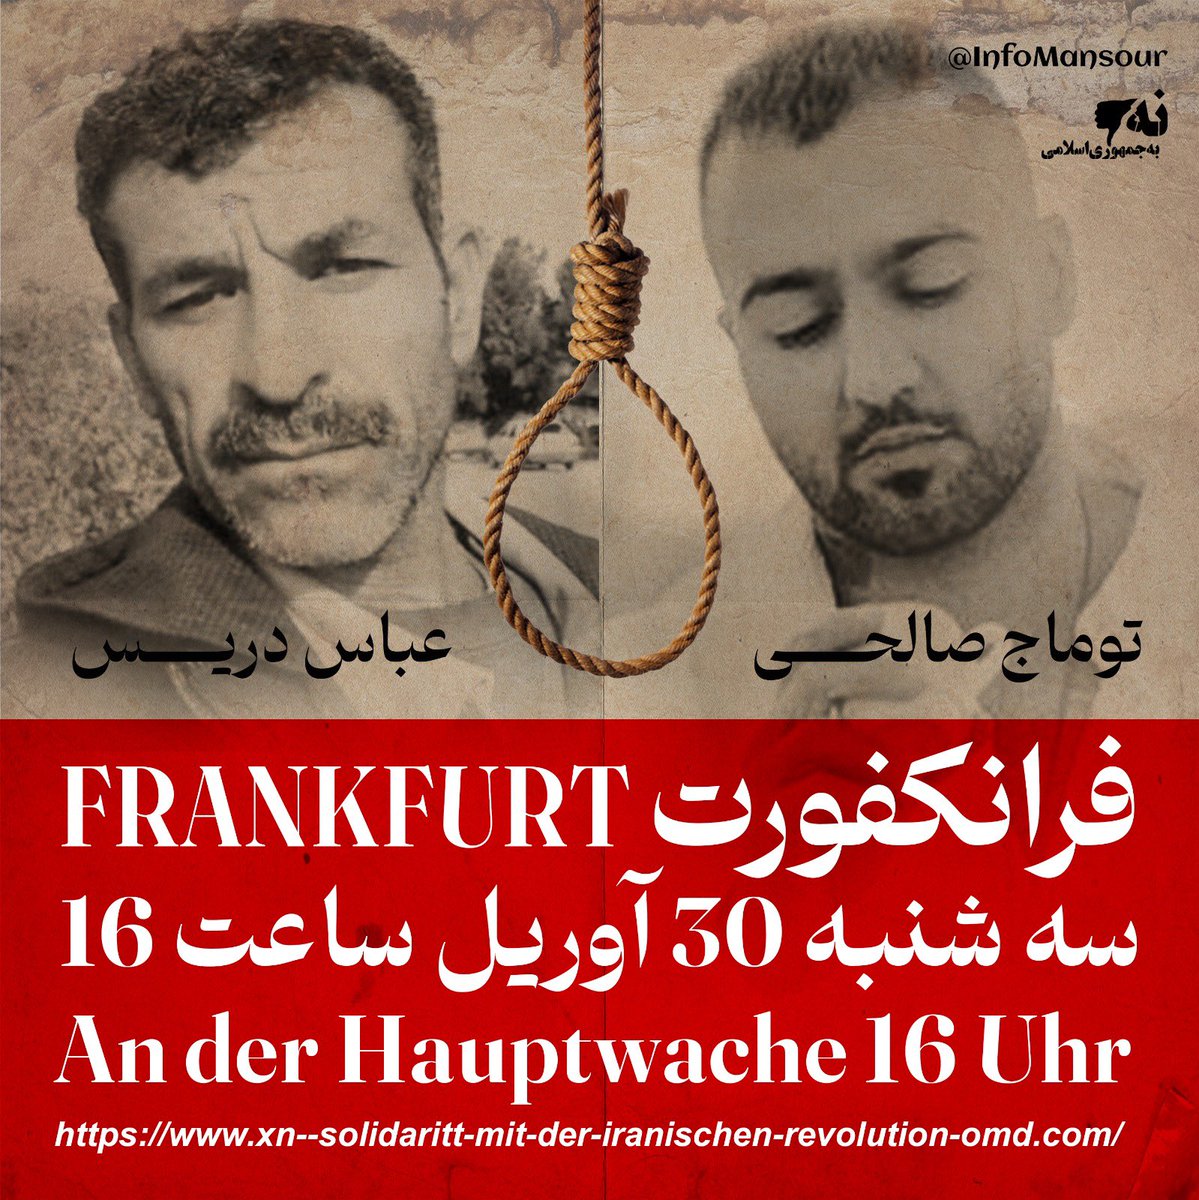 کارزار جهانی علیه اعدام ! فردا سه شنبه فرانکفورت ! #نه_به_اعدام #توماج_صالحى #عباس_دریس